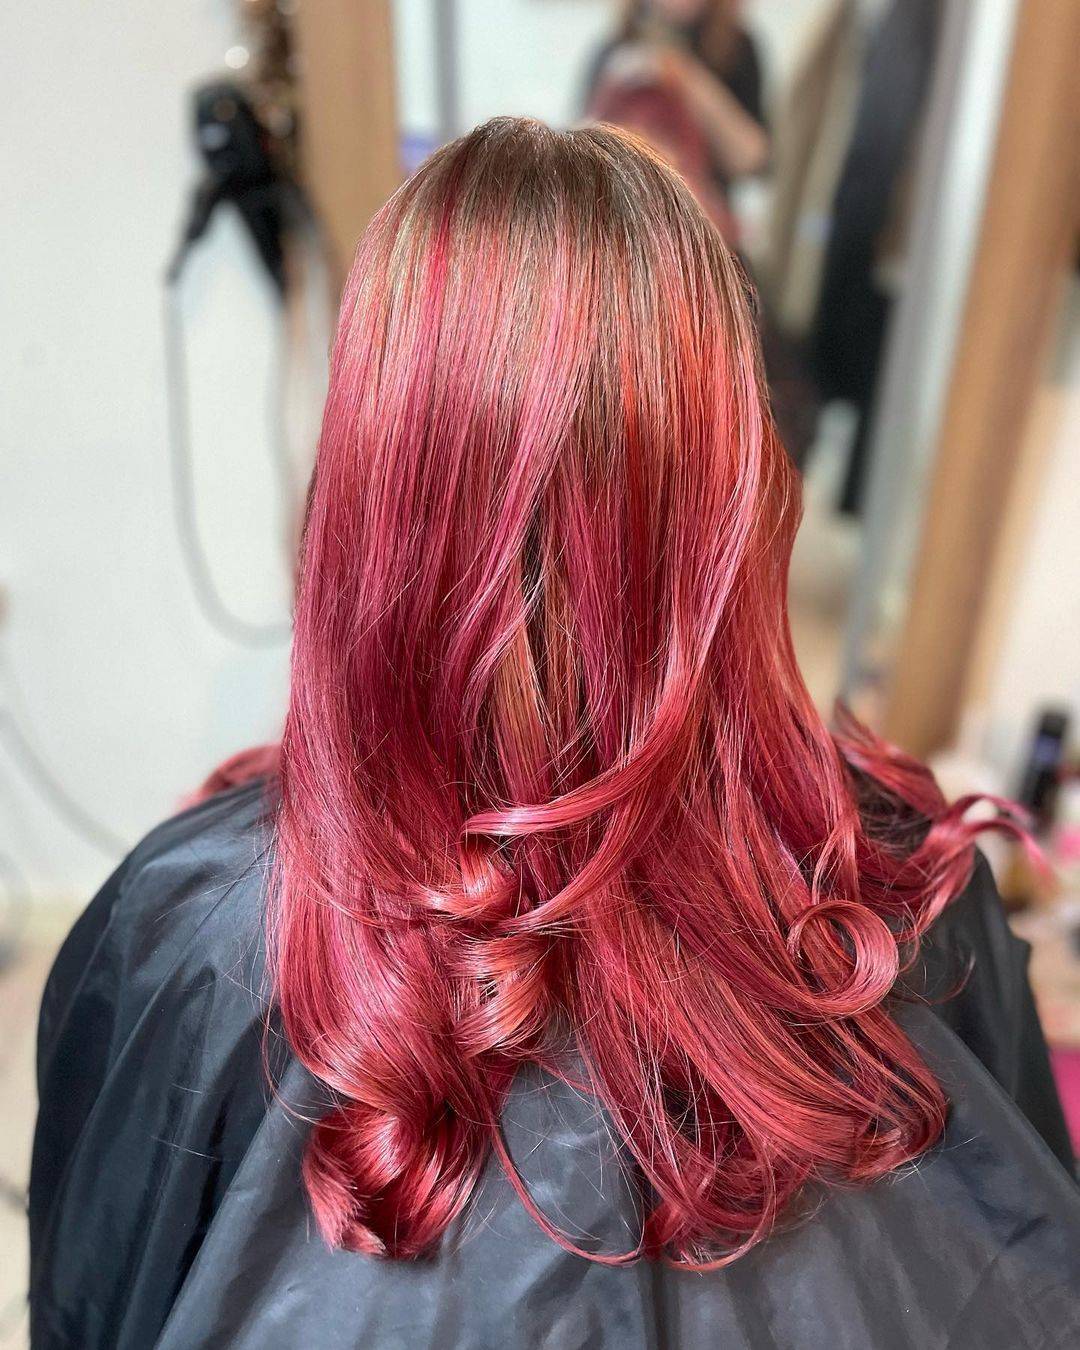 Burgundy hair color 283 burgundy hair color | burgundy hair color for women | burgundy hair color highlights Burgundy Hair Color